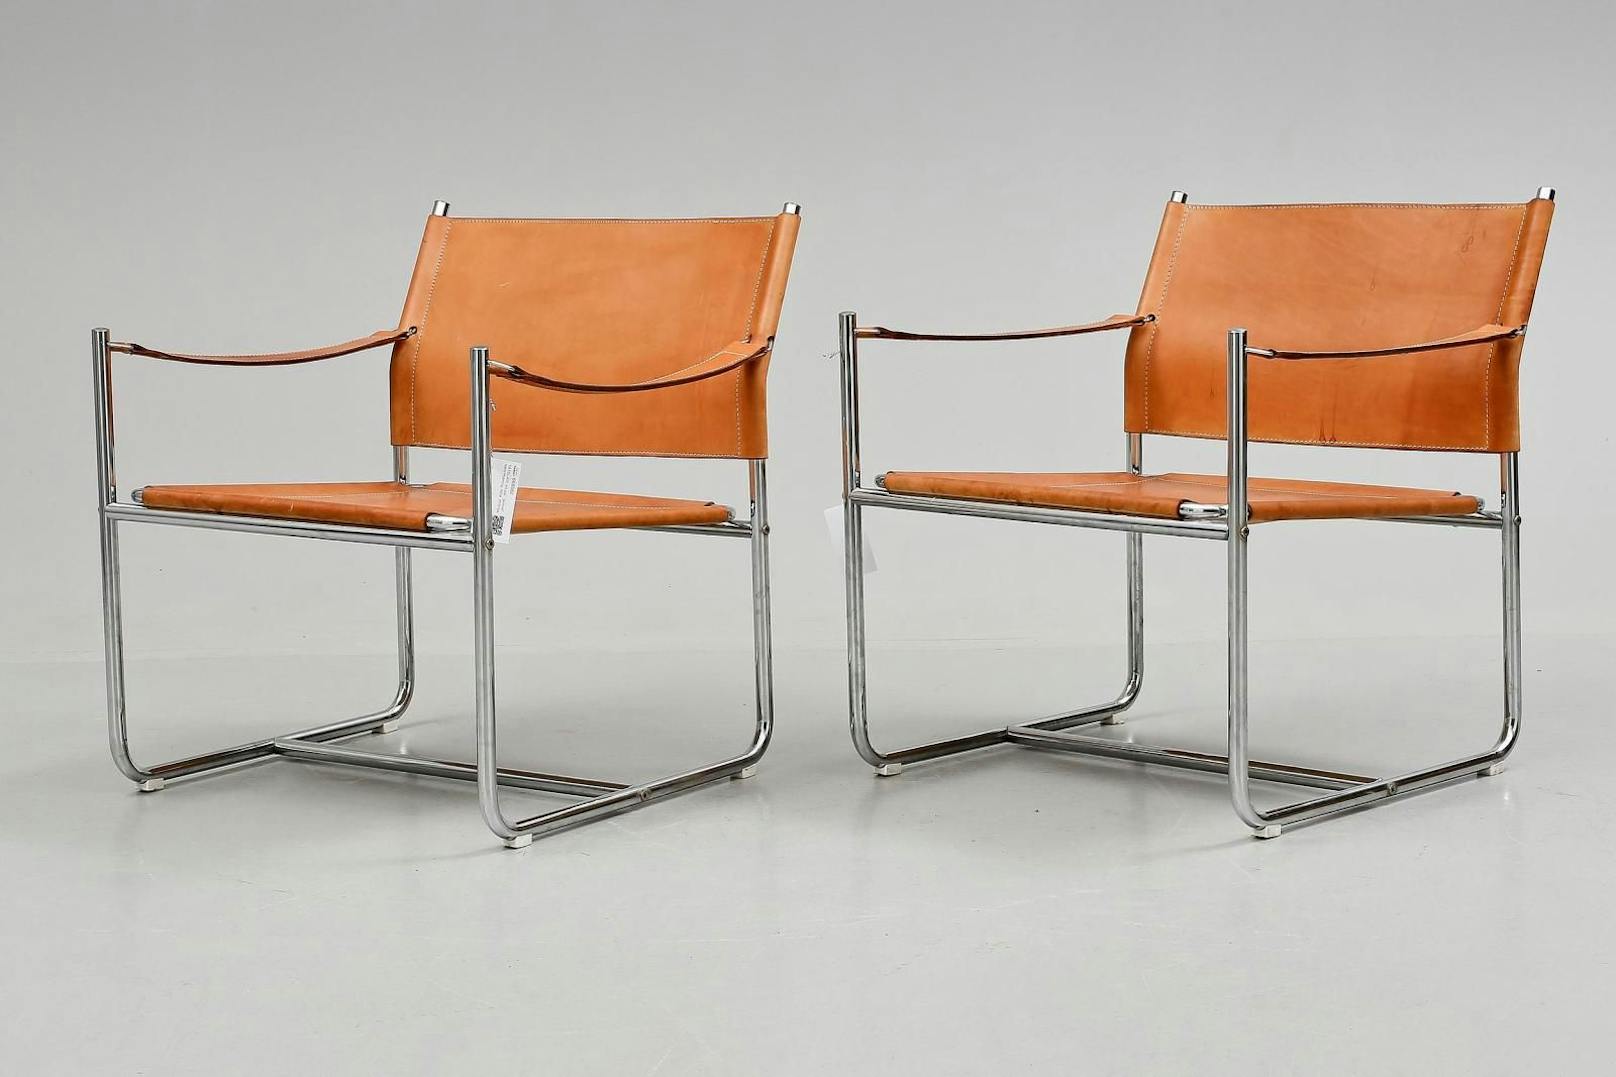 Der <strong>"Amiral"-Stuhl</strong> wurde von Karin Mobring entworfen und kam in den 70er-Jahren in die Ikea-Filialen. Das populäre Modell hat mittlerweile einen Wert von mehr rund <strong>900 Euro.</strong>